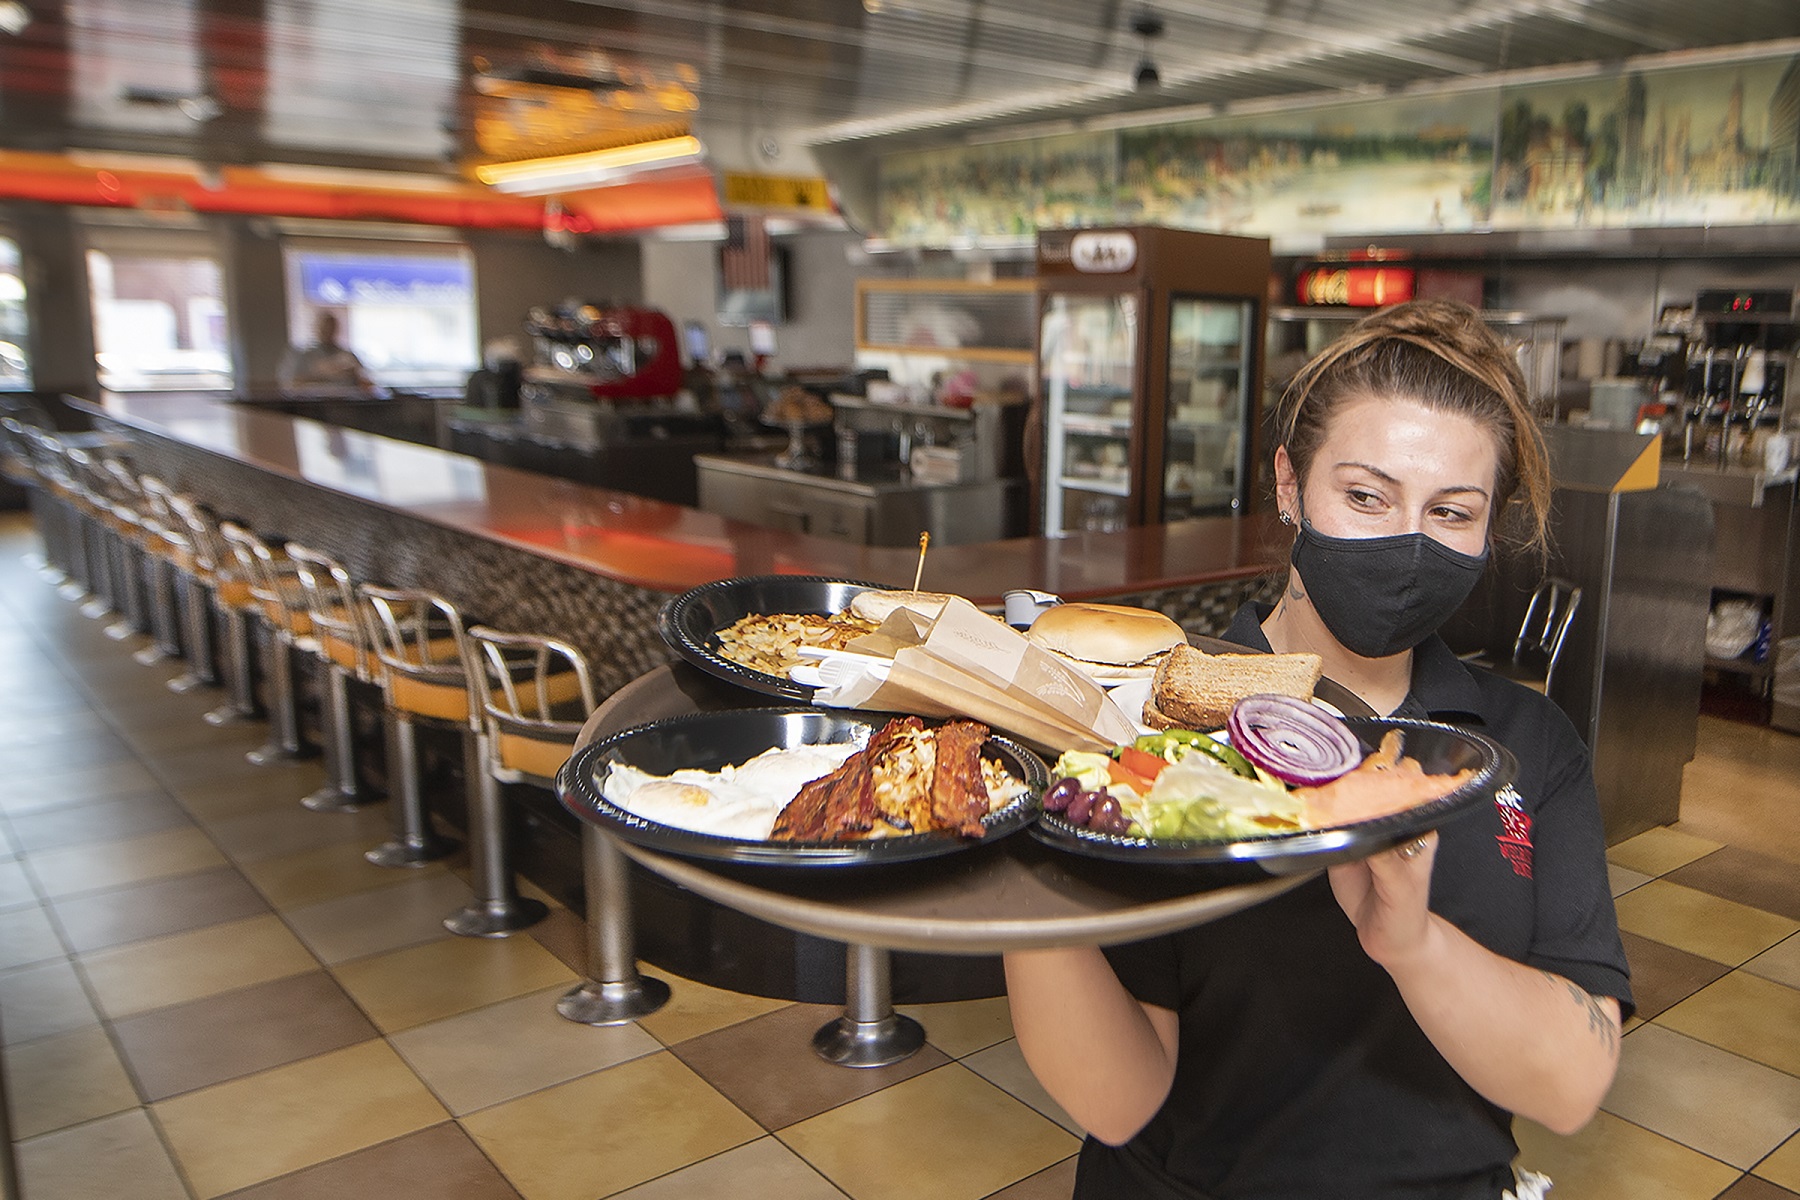 Αύξηση Κρούσματα: Εστιατόρια γρήγορου φαγητού στις ΗΠΑ σκέφτονται να κλείσουν το φαγητό σε εσωτερικούς χώρους